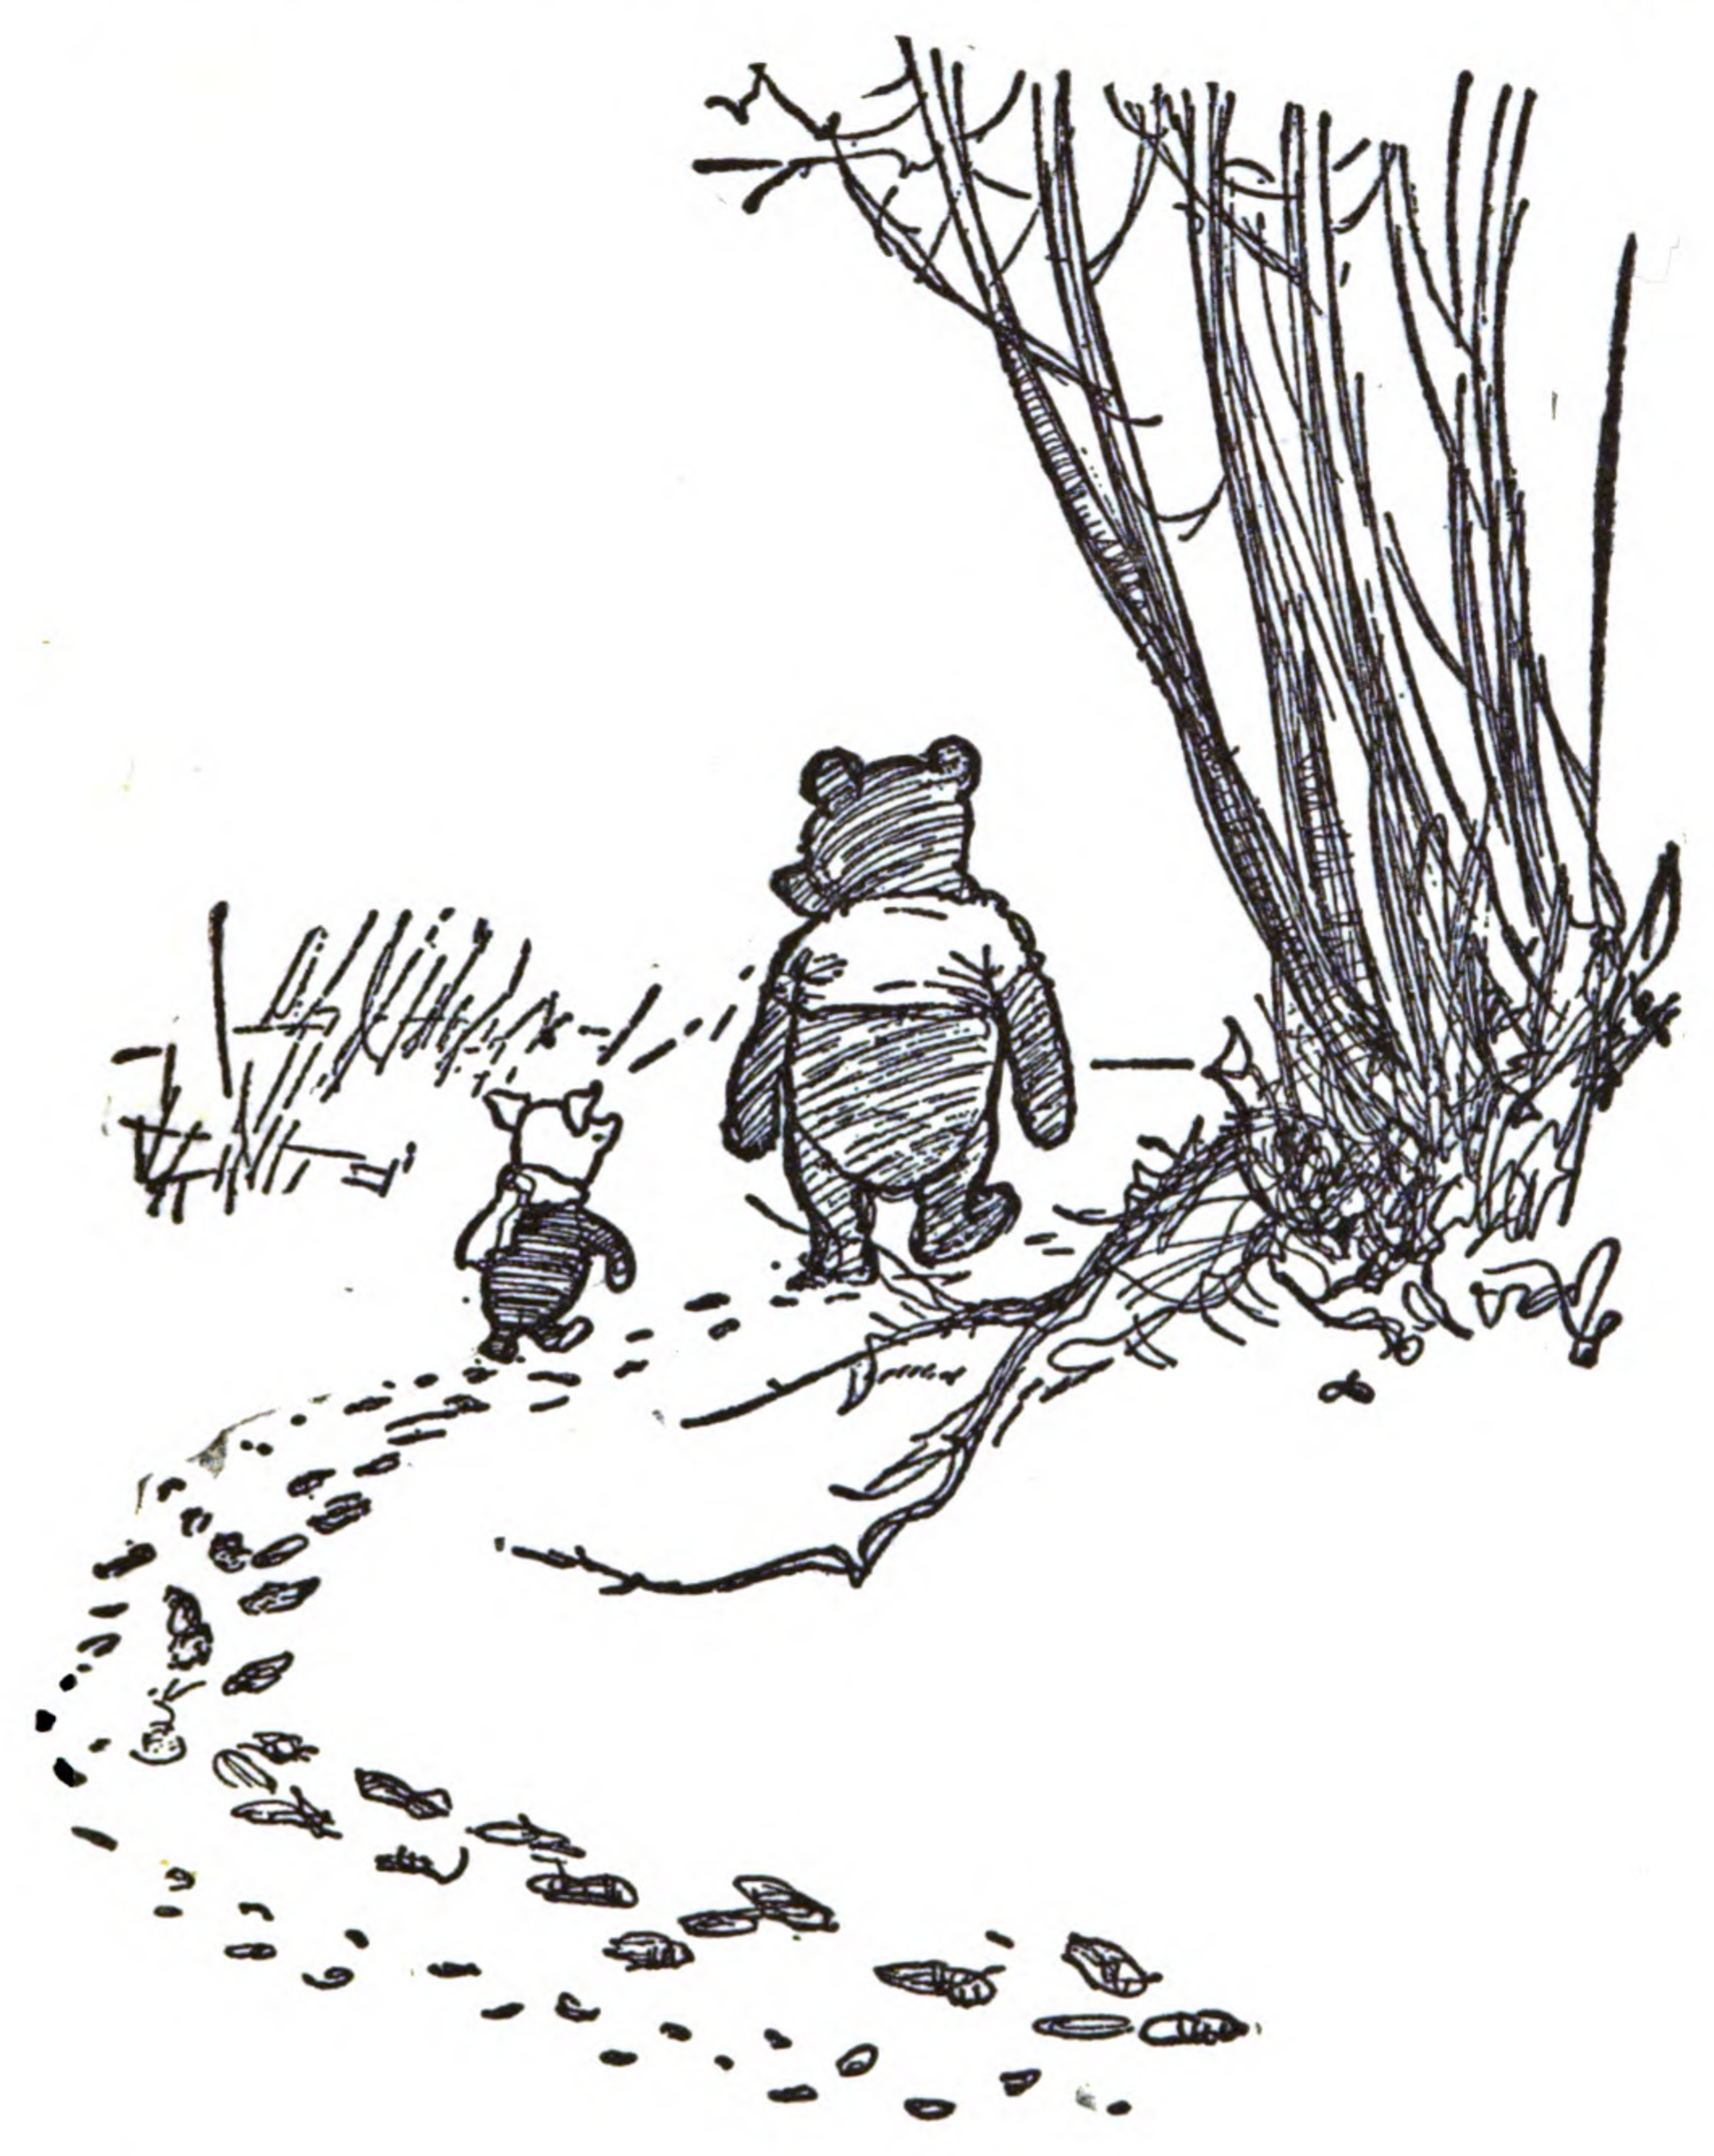 Piglet (Winnie-the-Pooh) - Wikipedia